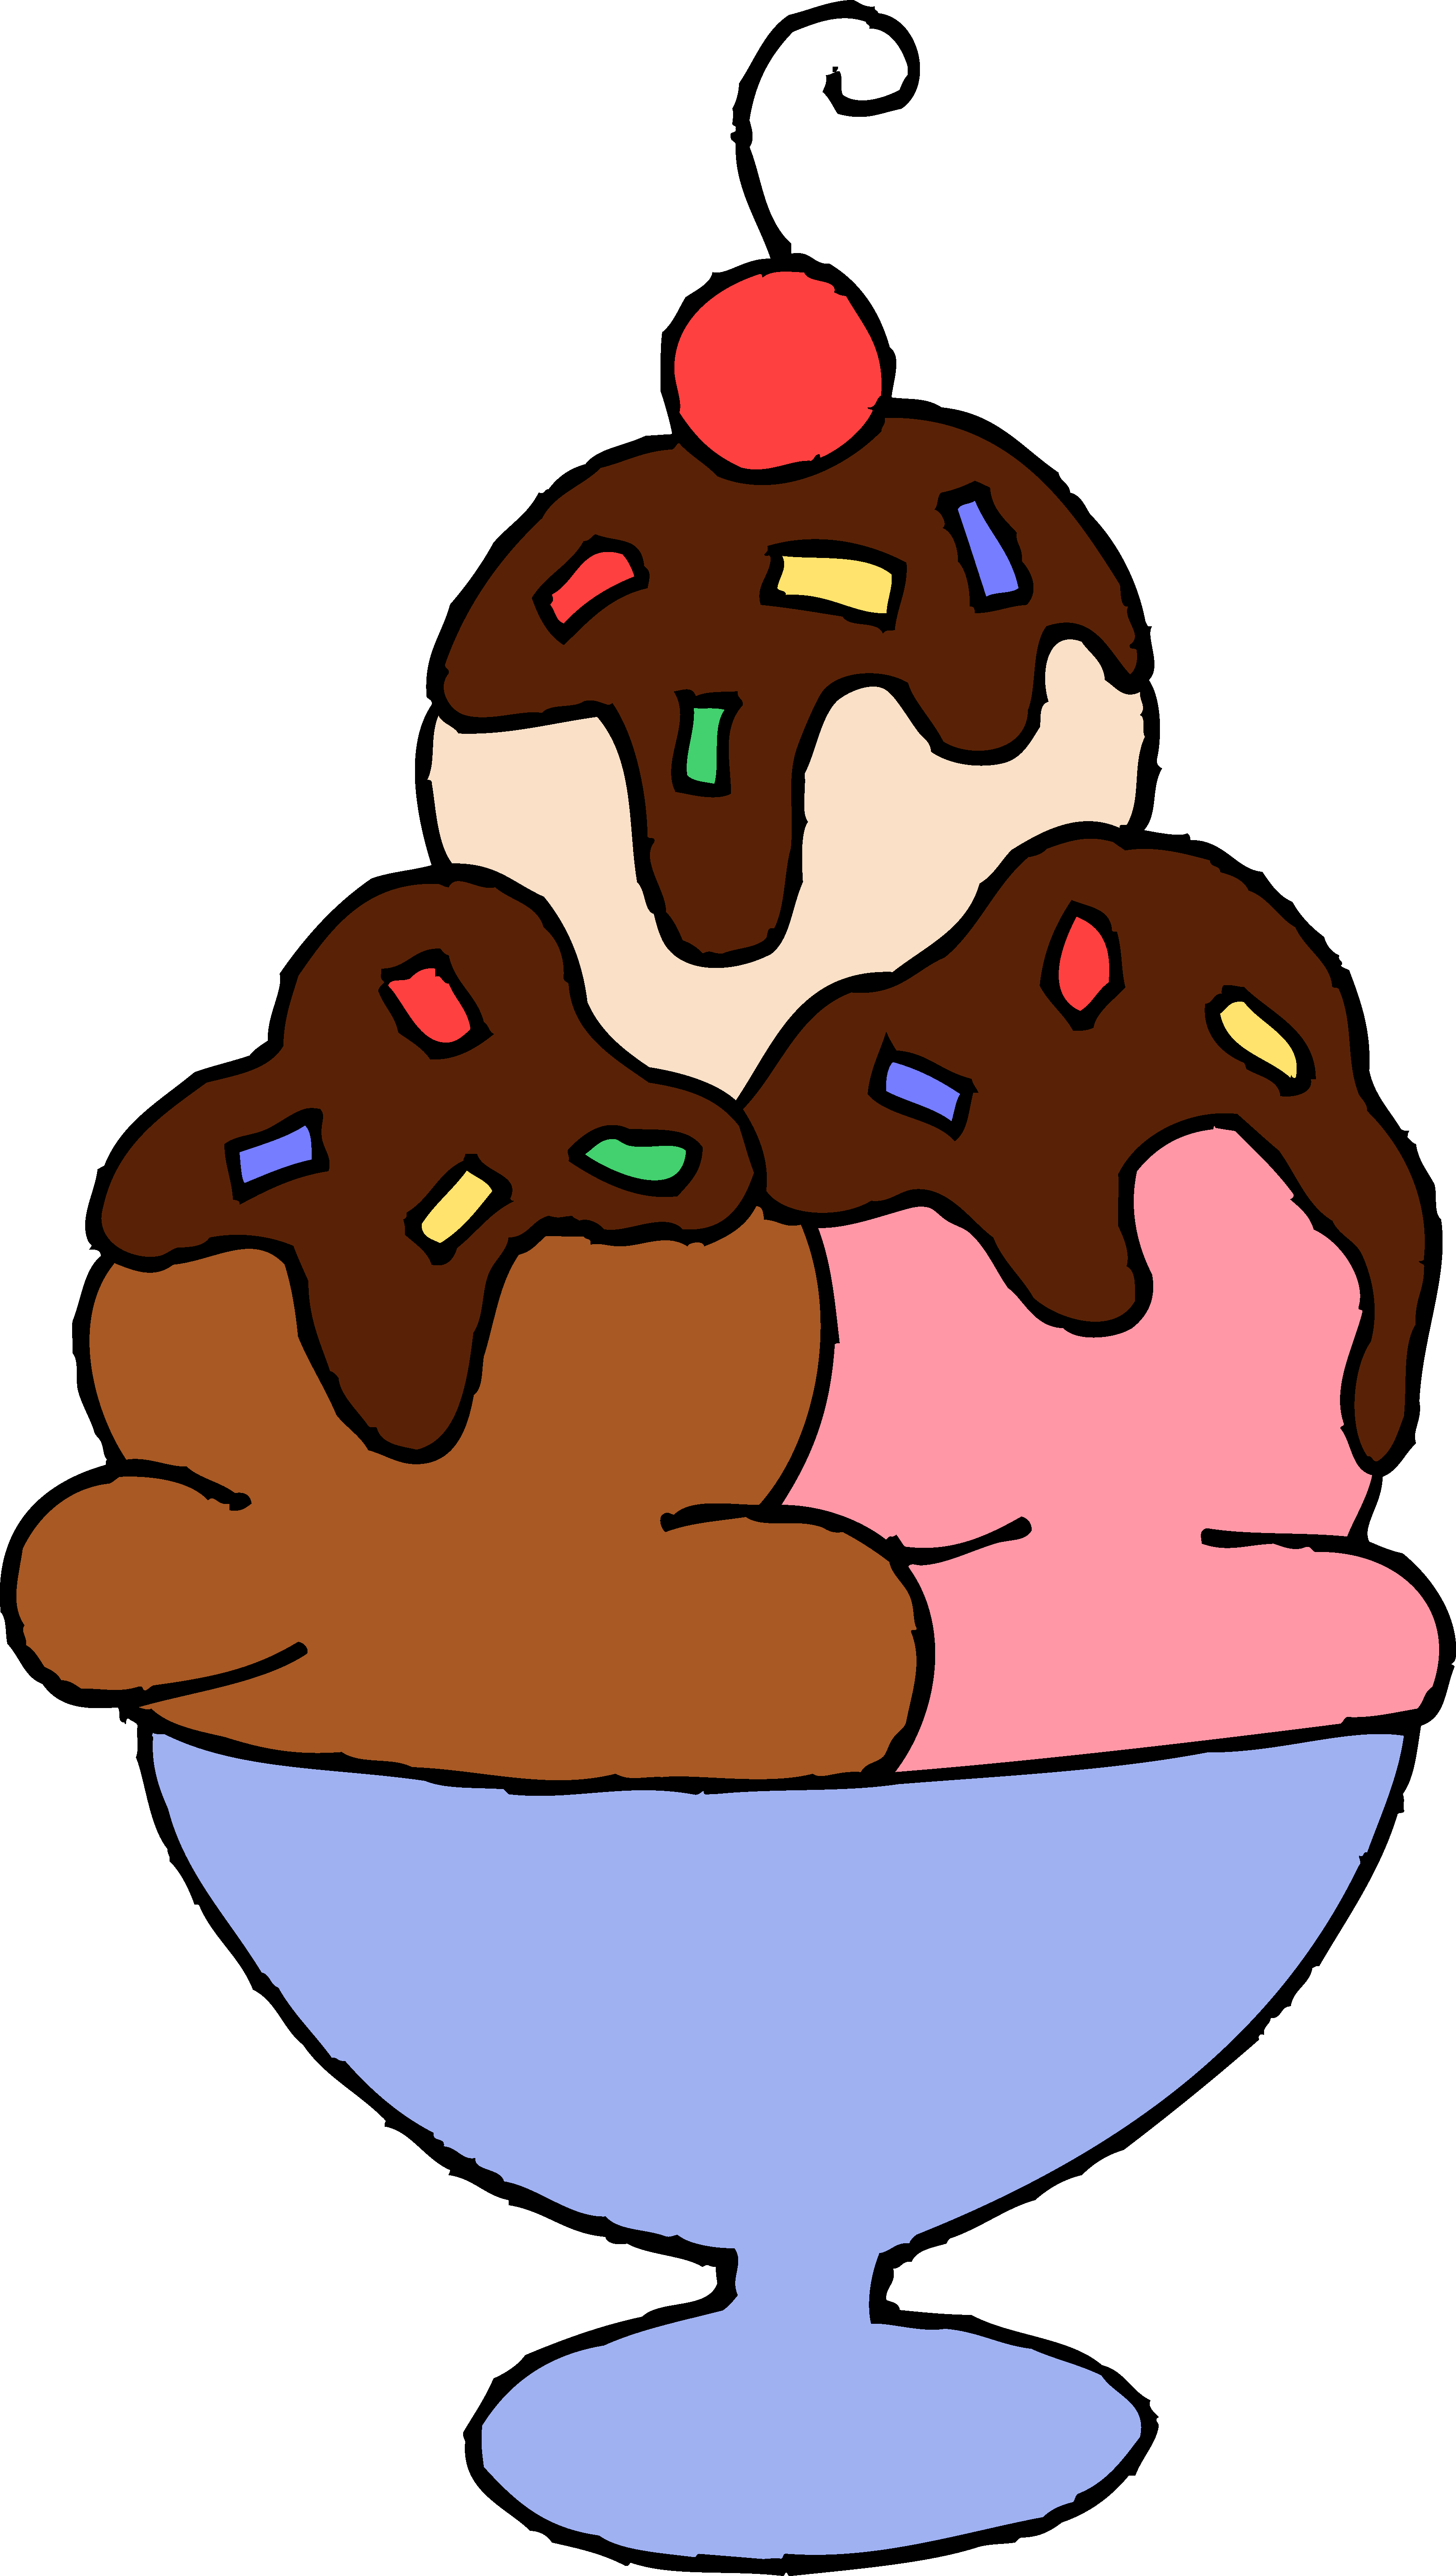 Cartoon ice cream sundae clipart